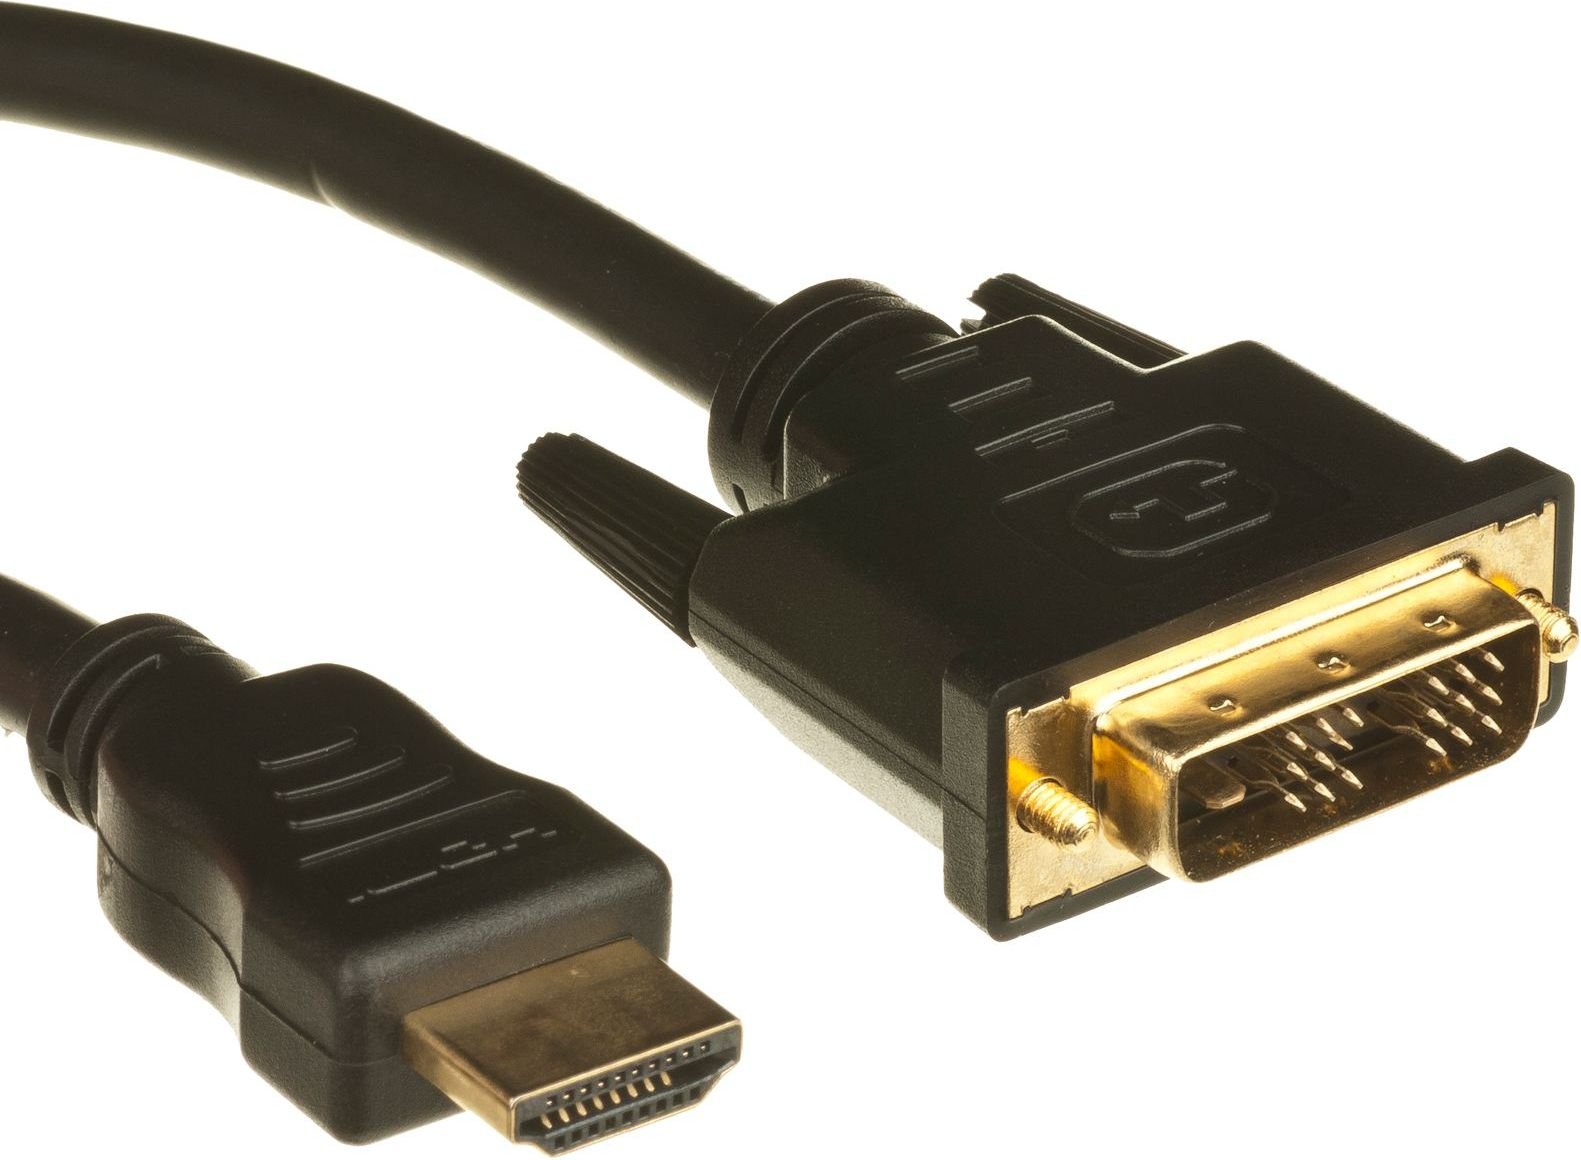 Accesoriu IT startech DVI HDMI, 2, negru (HDDVIMM2M)